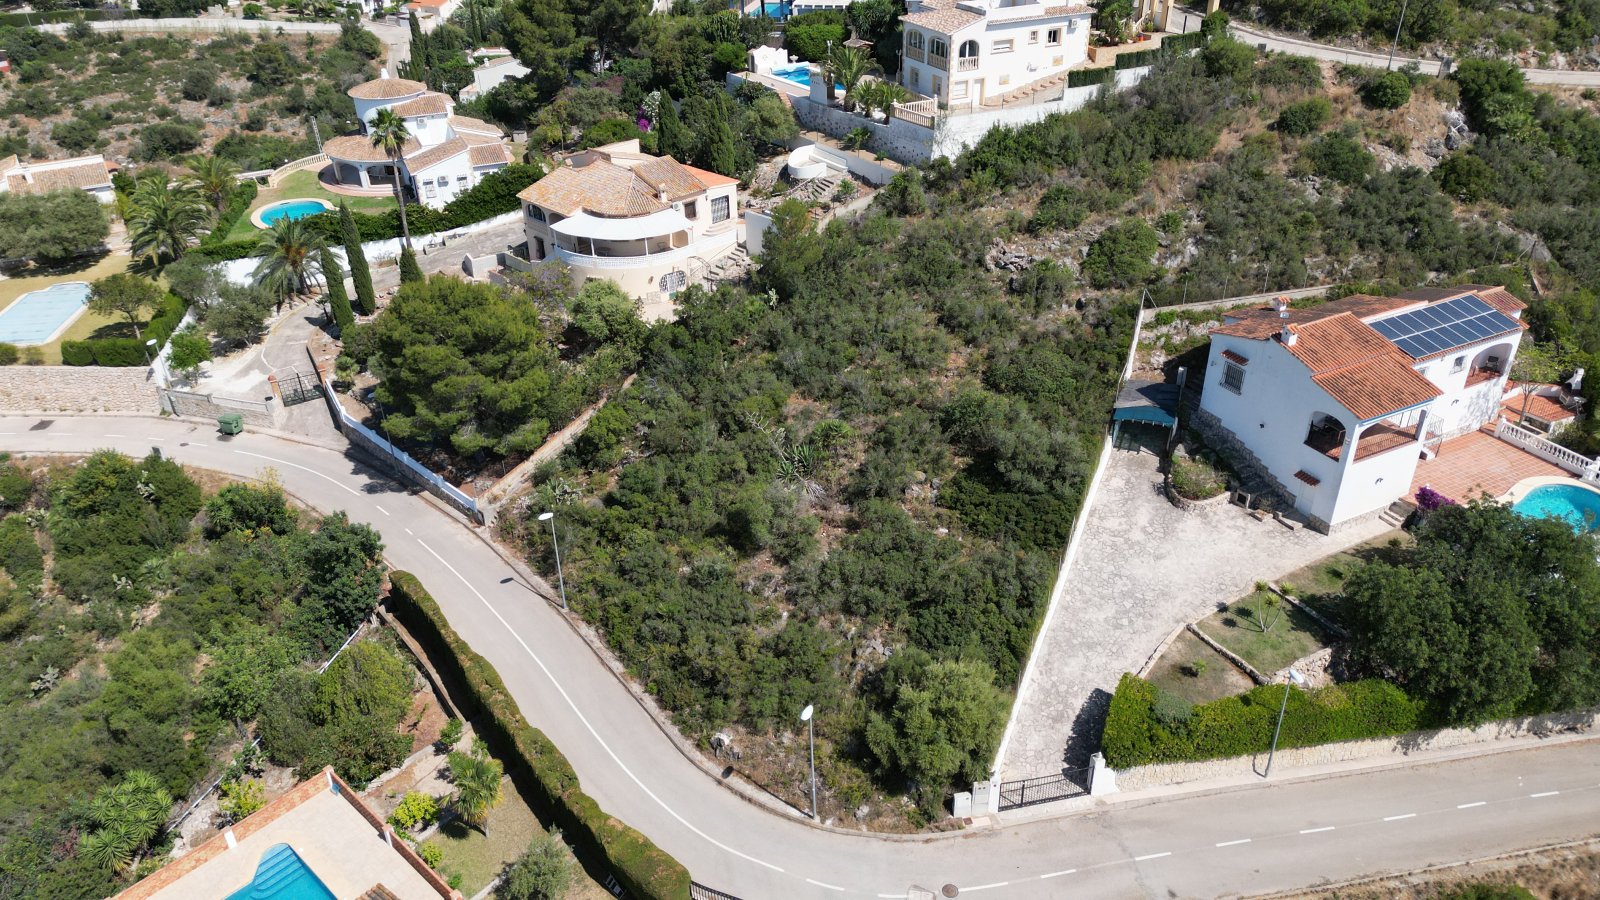 Schönes Baugrundstück in Oliva, nahe der Quelle Font Salada, in oberer Lage mit Panoramablick.